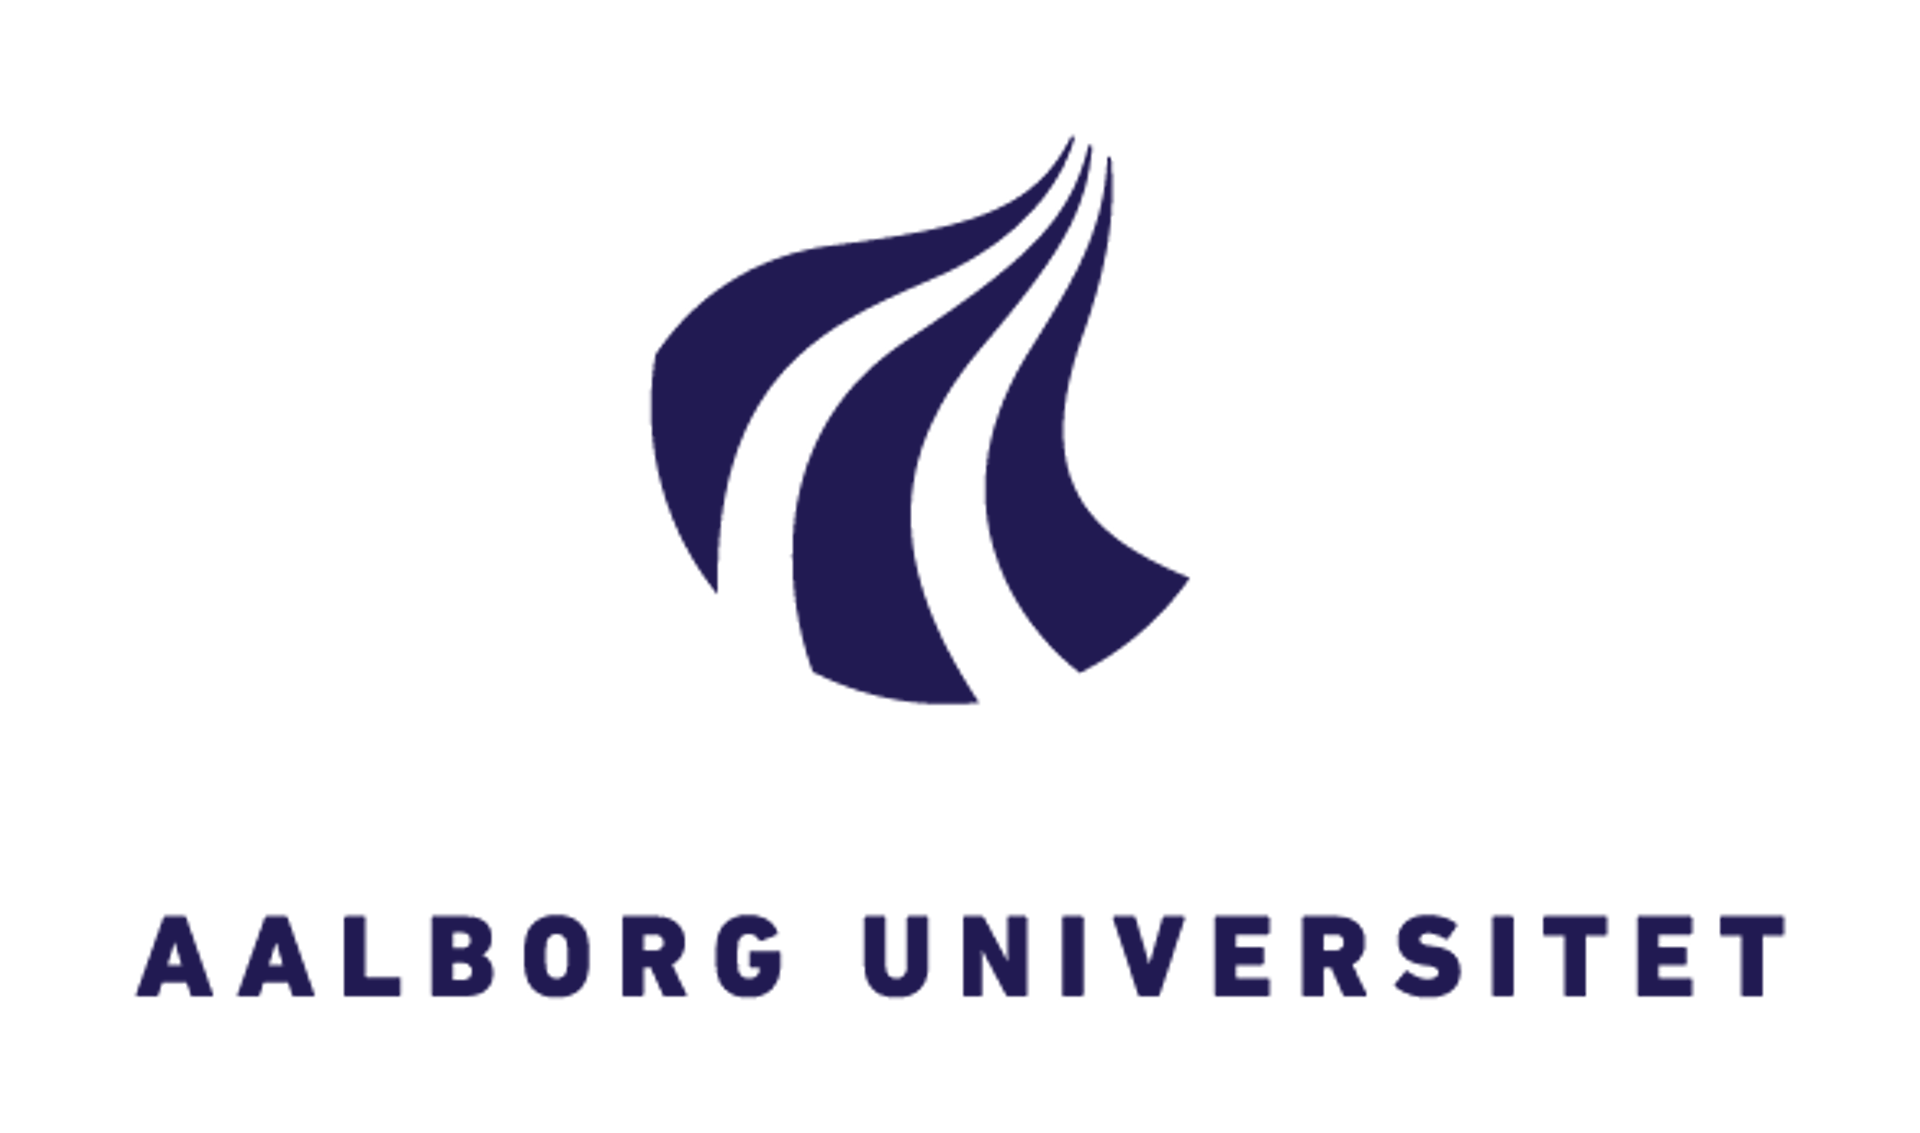 AAU-Aalborg Universitet